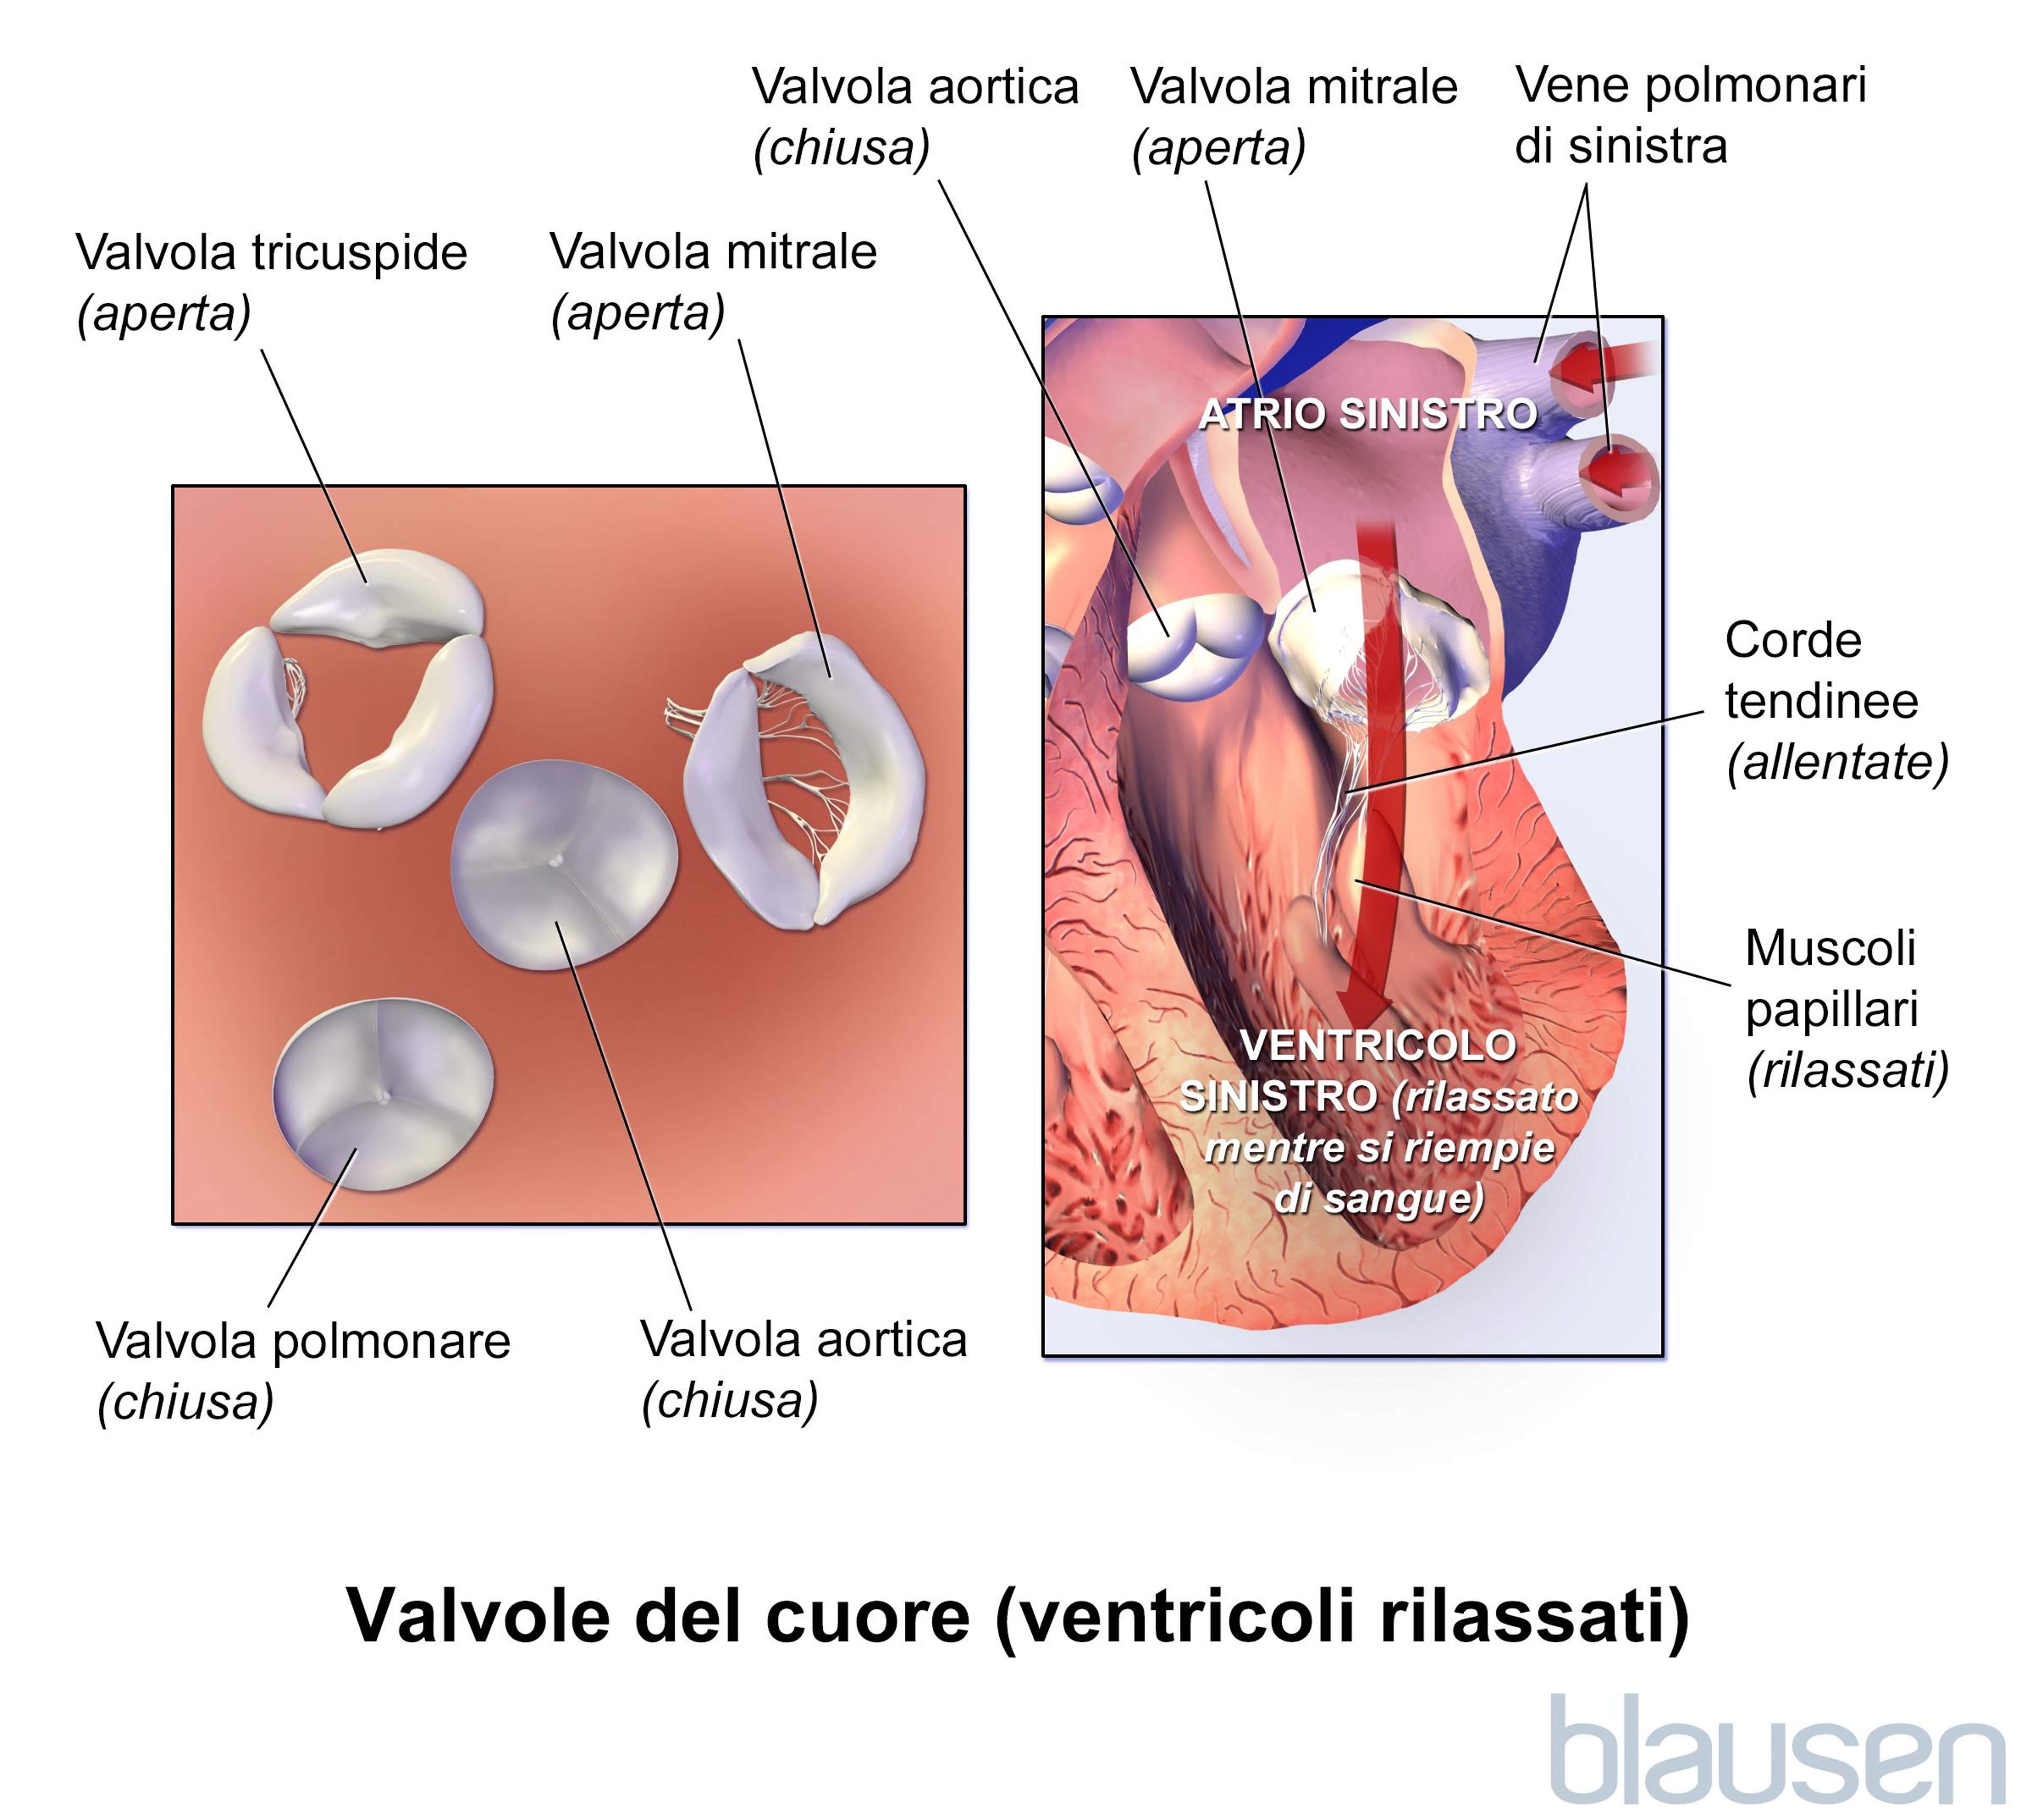 Valvole del cuore (ventricoli rilassati)